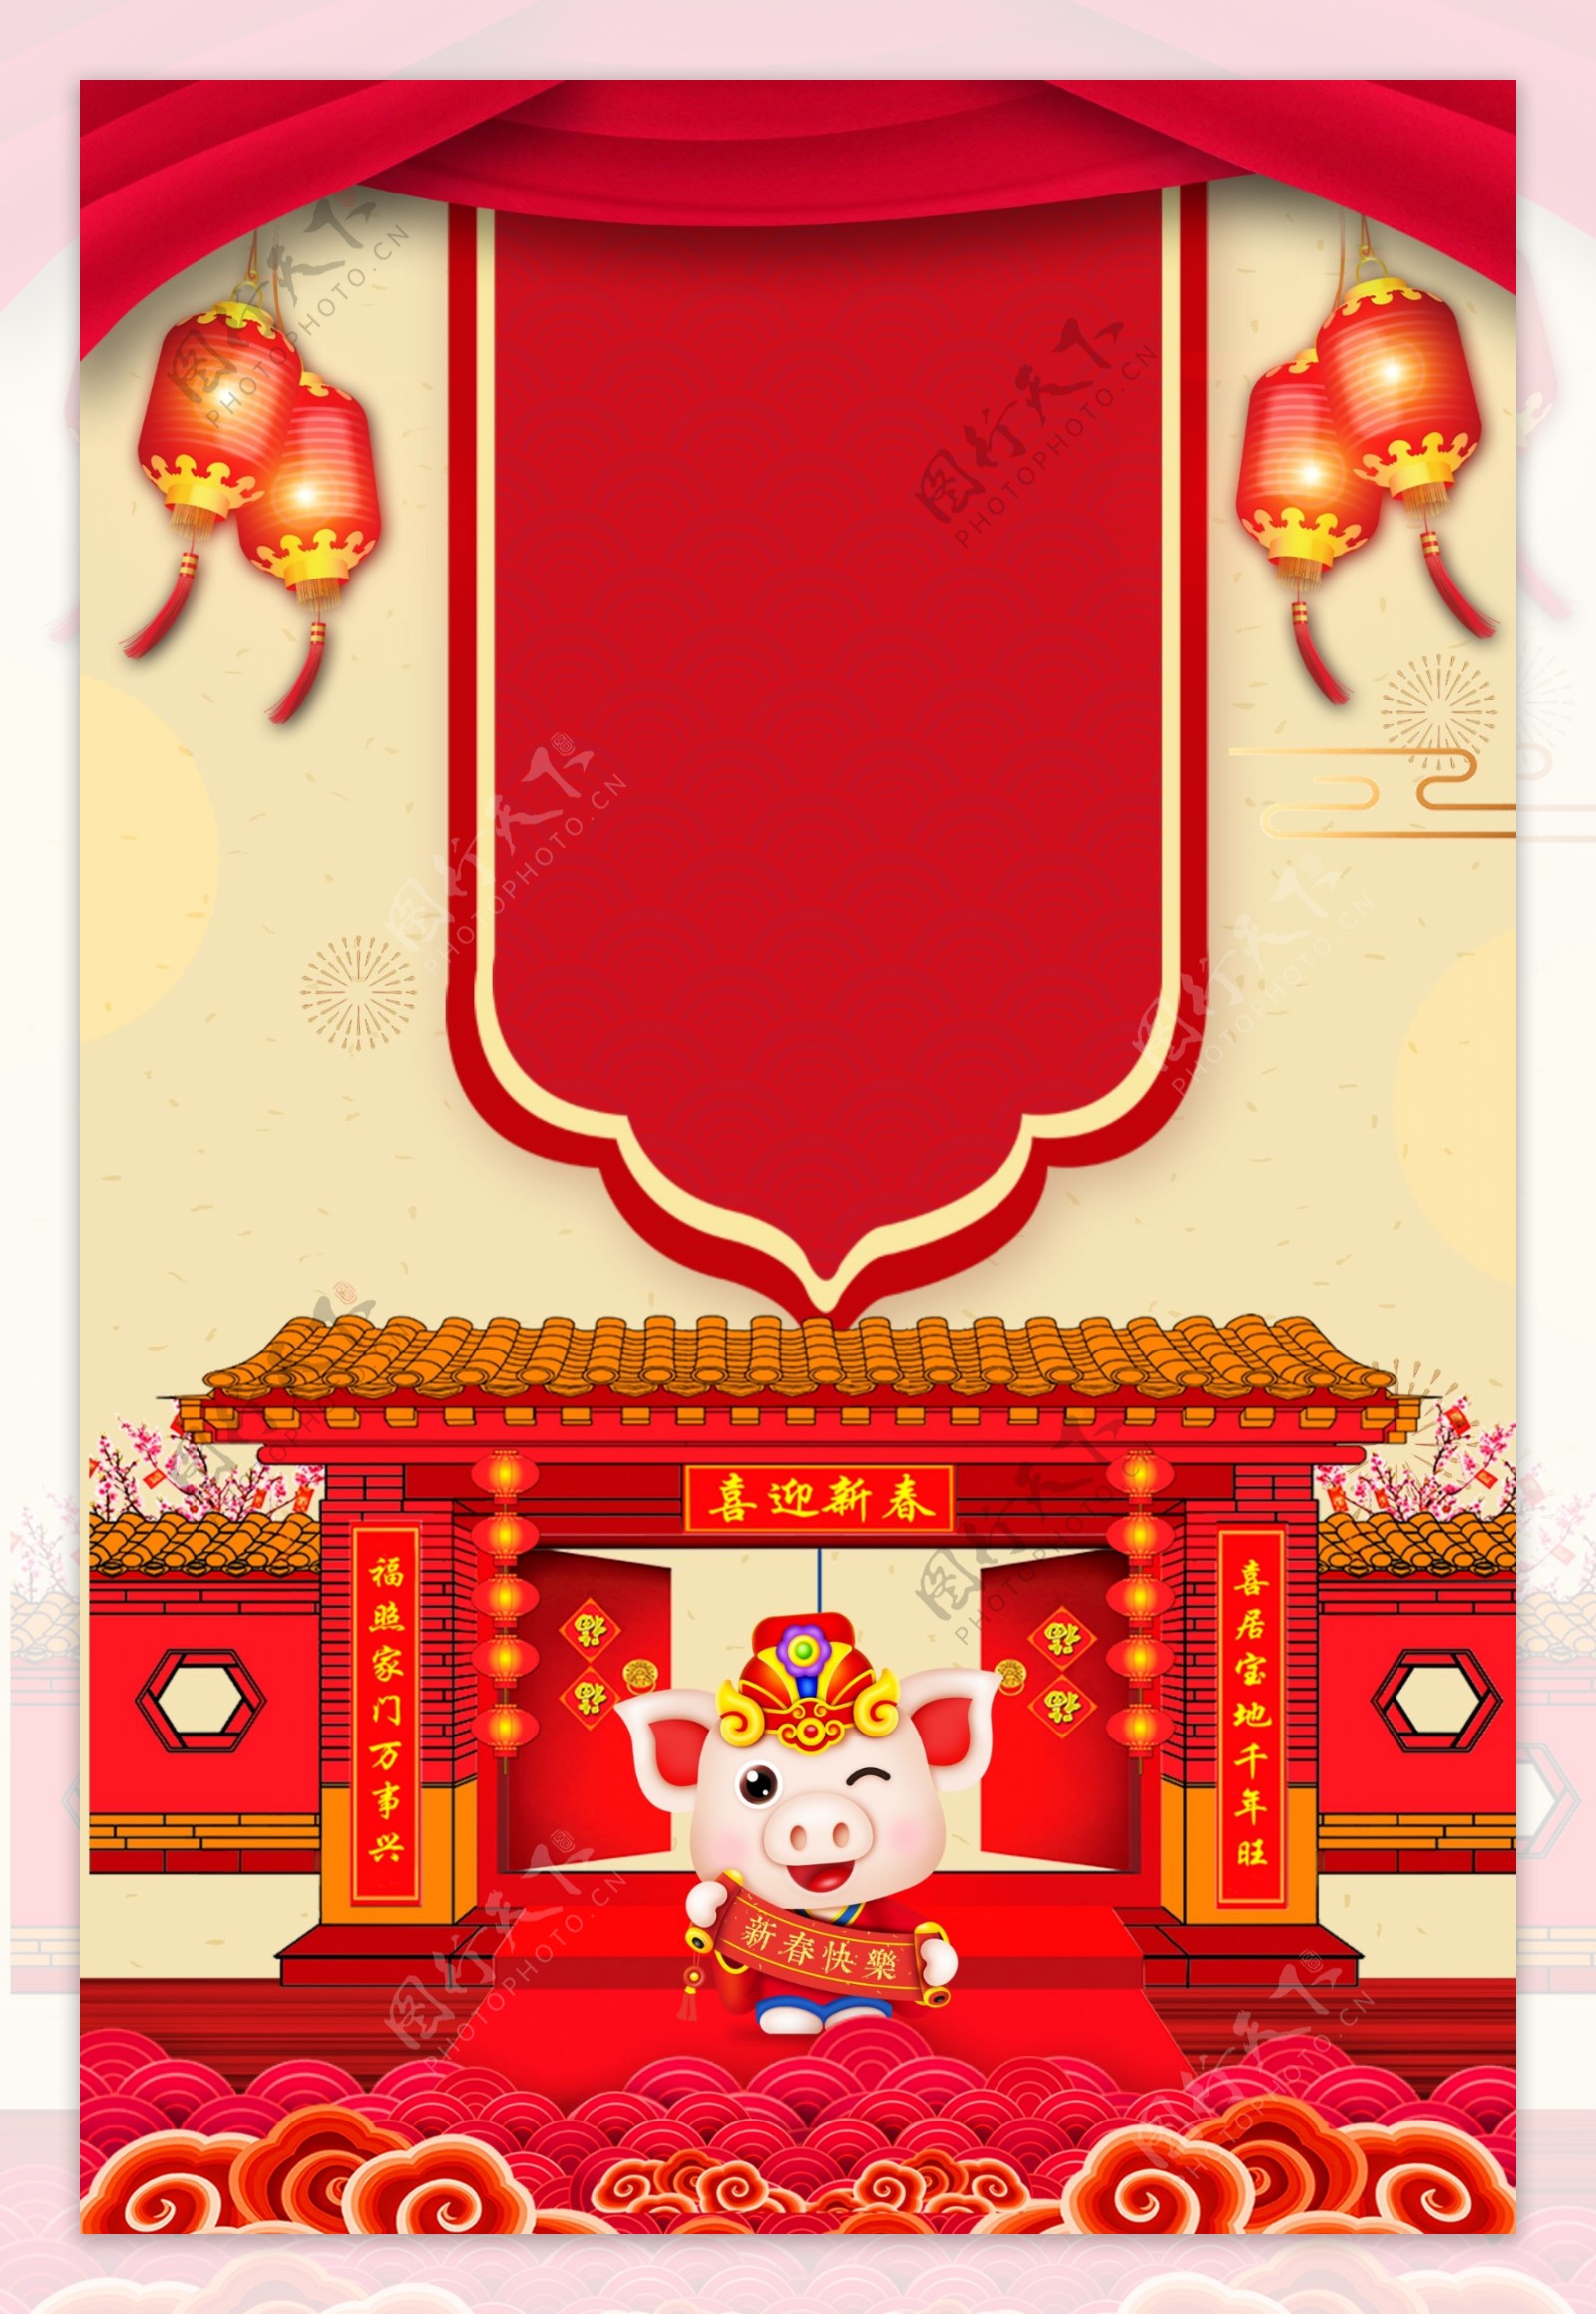 大红灯笼传统猪年贺岁吉祥广告背景